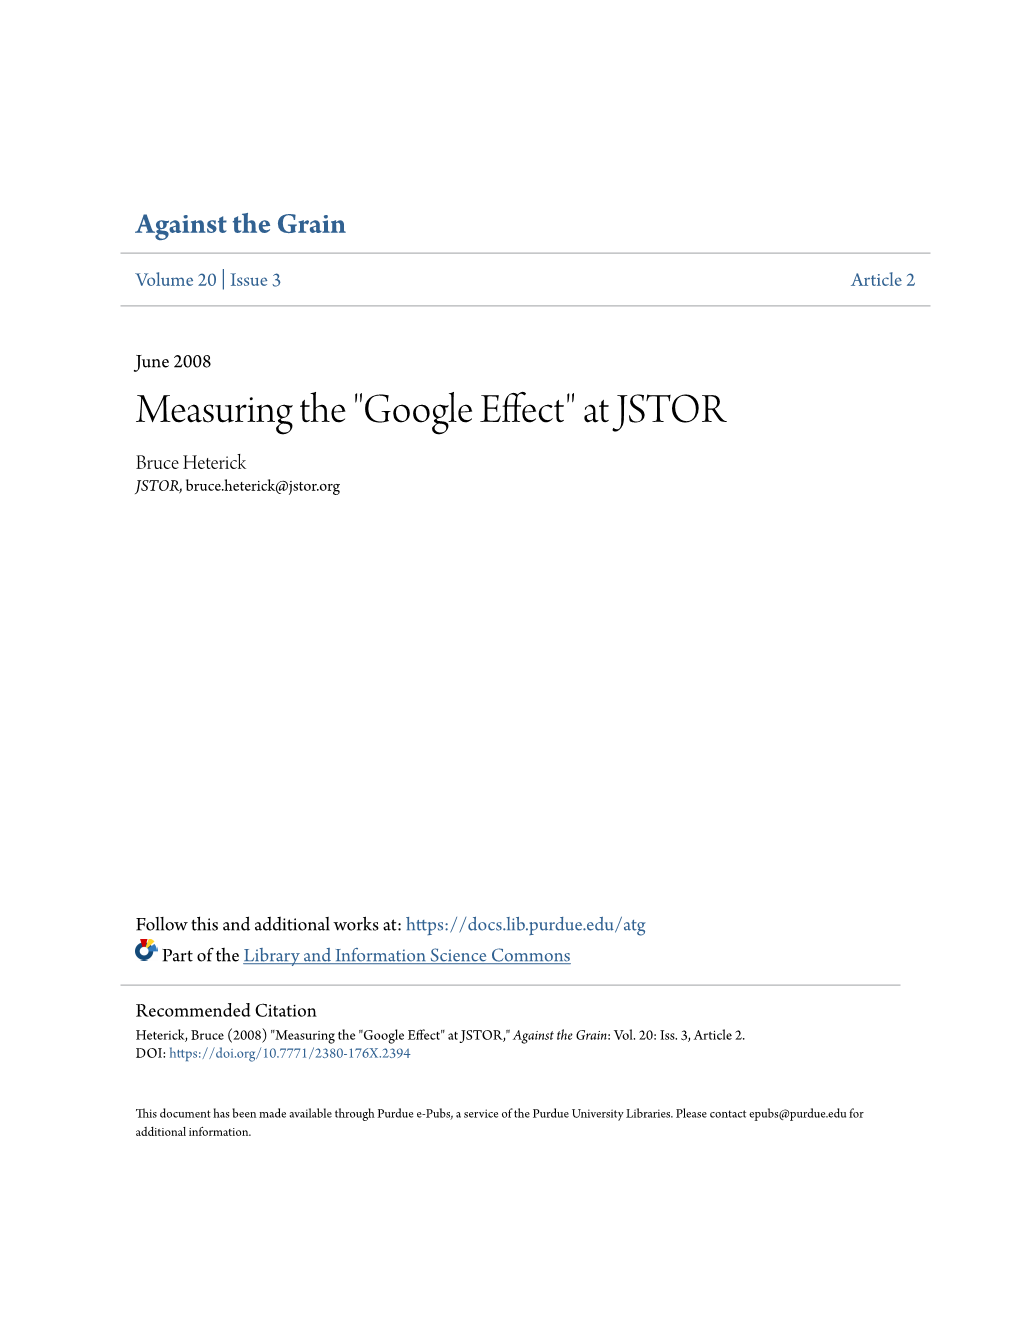 "Google Effect" at JSTOR Bruce Heterick JSTOR, Bruce.Heterick@Jstor.Org